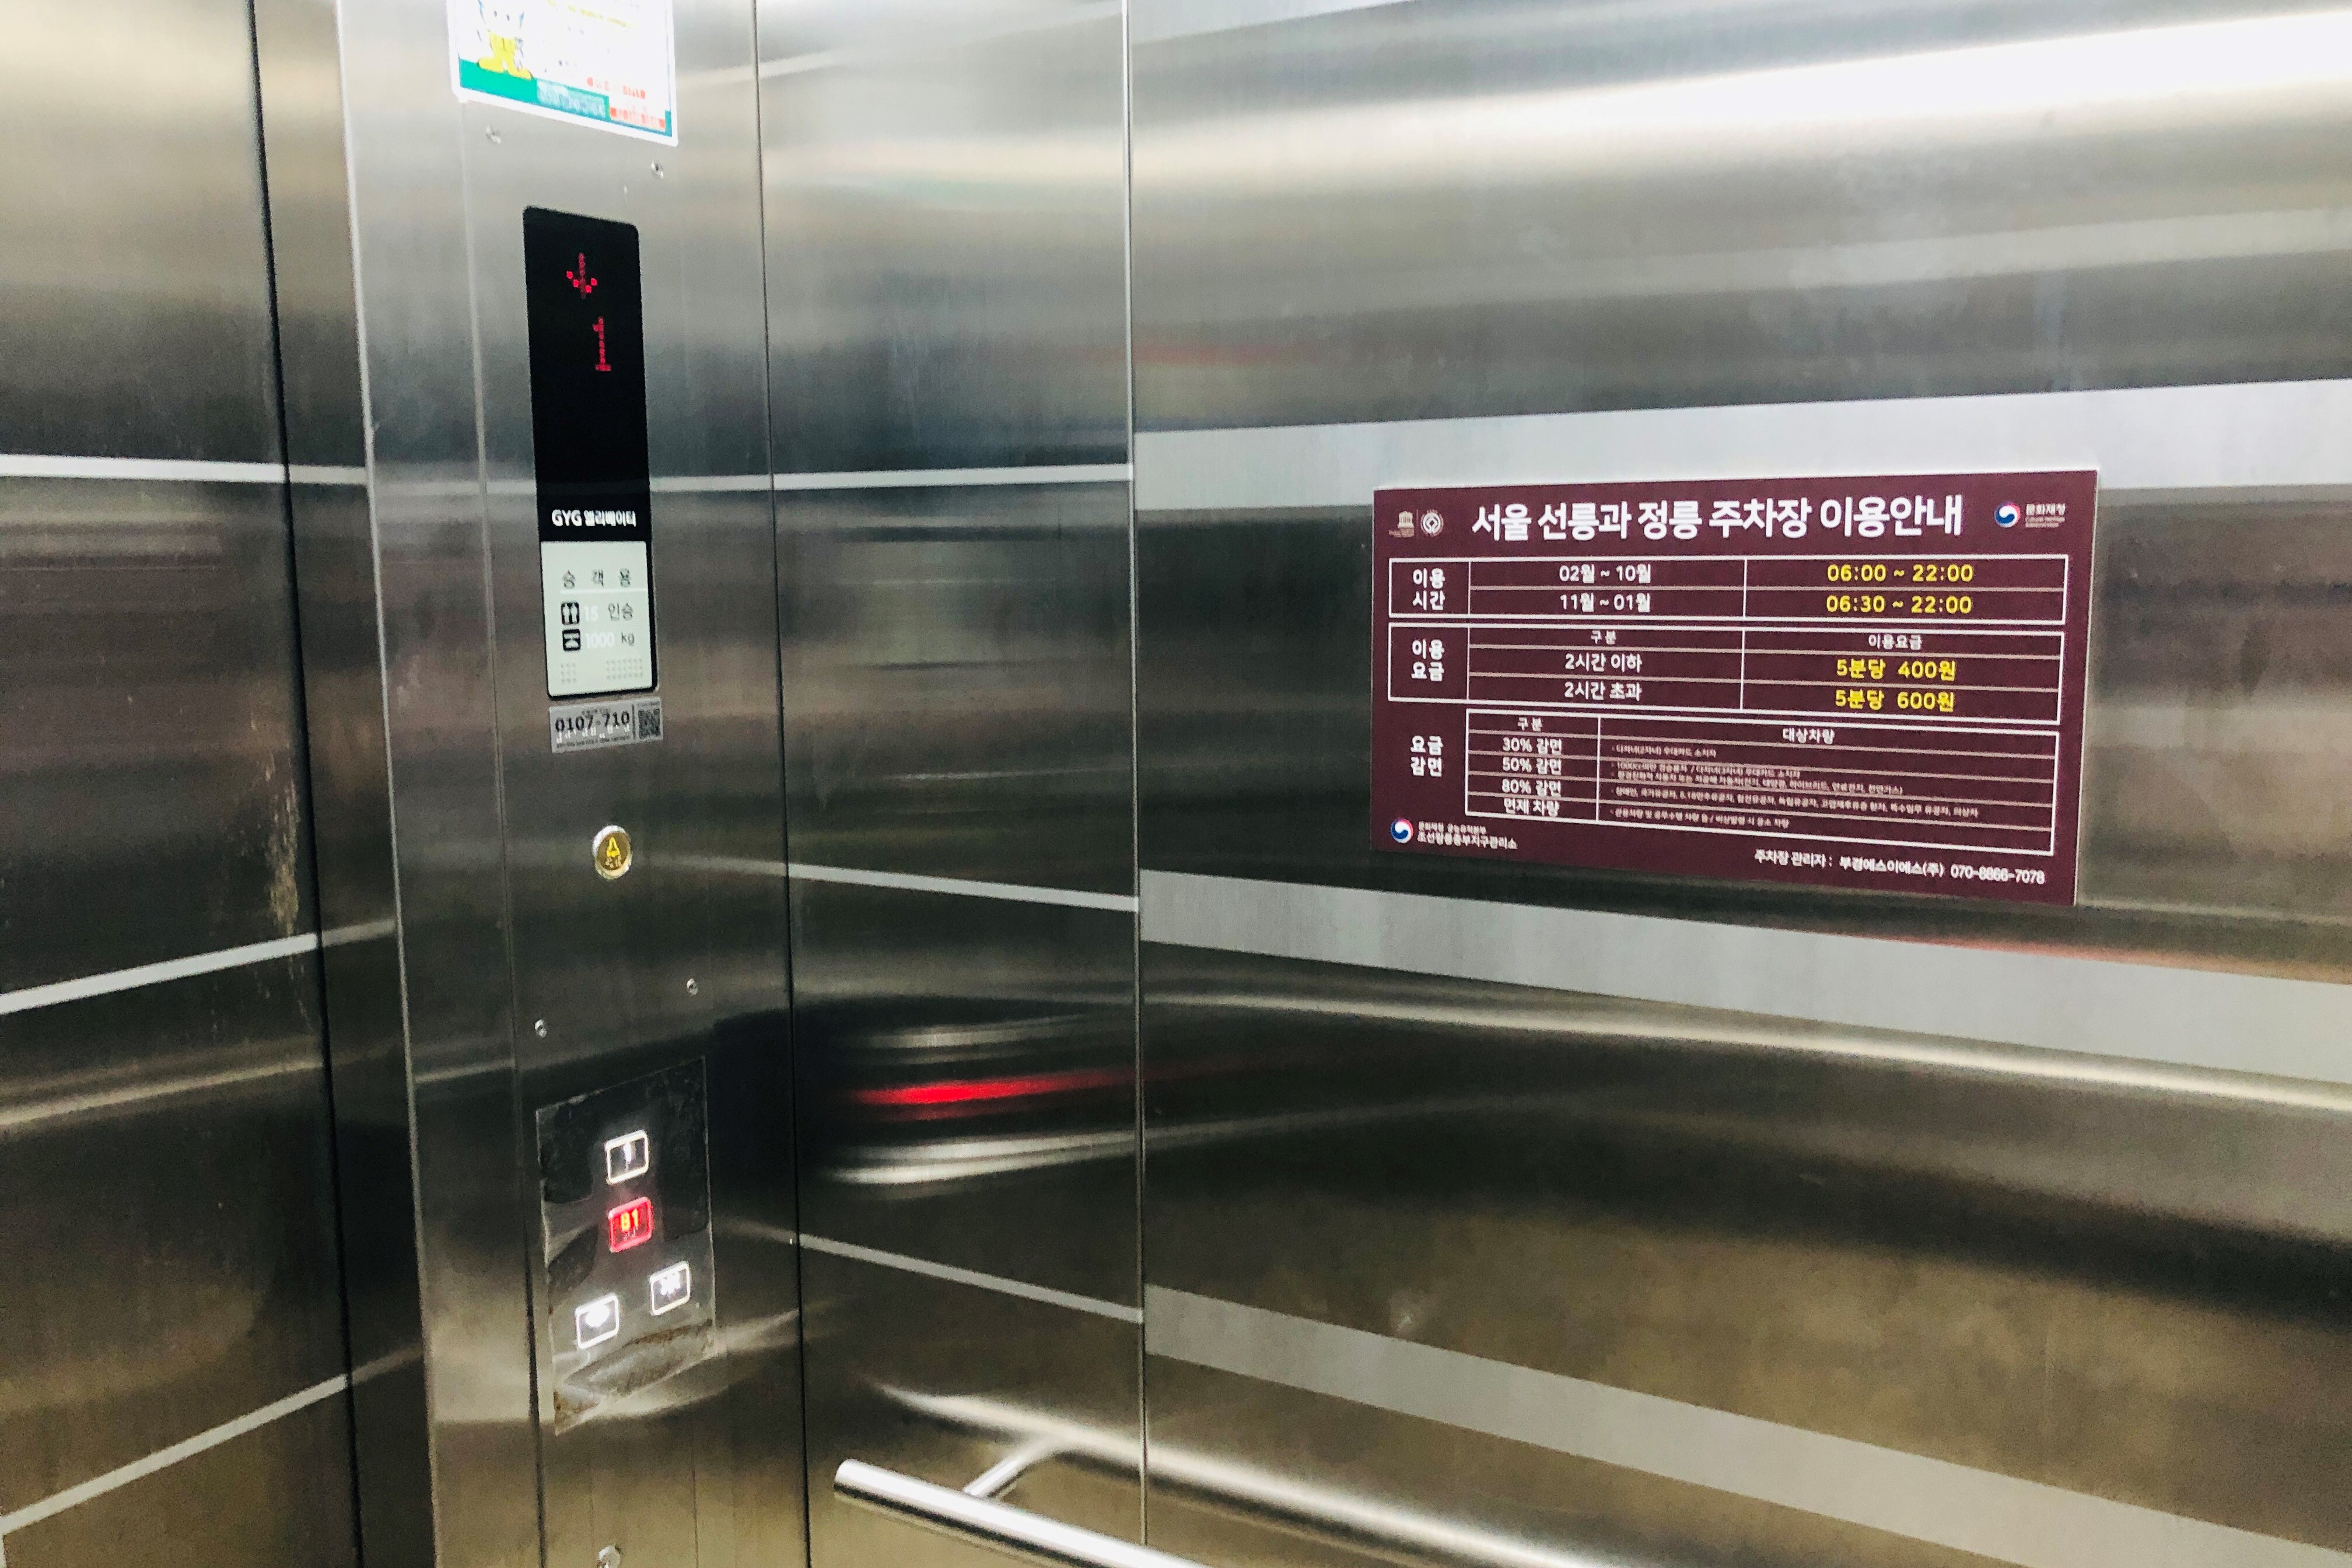 엘리베이터/장애인주차장0 : 선릉과 정릉(선정릉) 엘리베이터 내부 전경